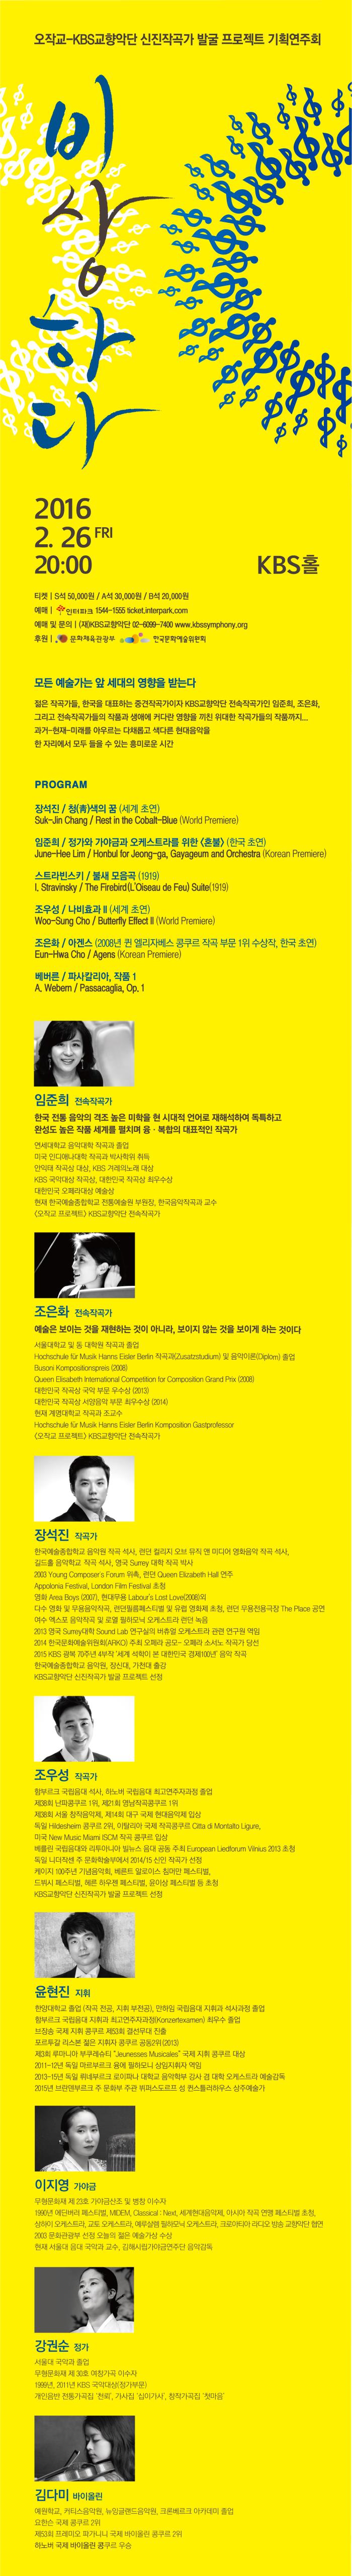 오작교-KBS교향악단 신진작곡가 발굴 프로젝트 기획연주회 [비상하다] 이미지